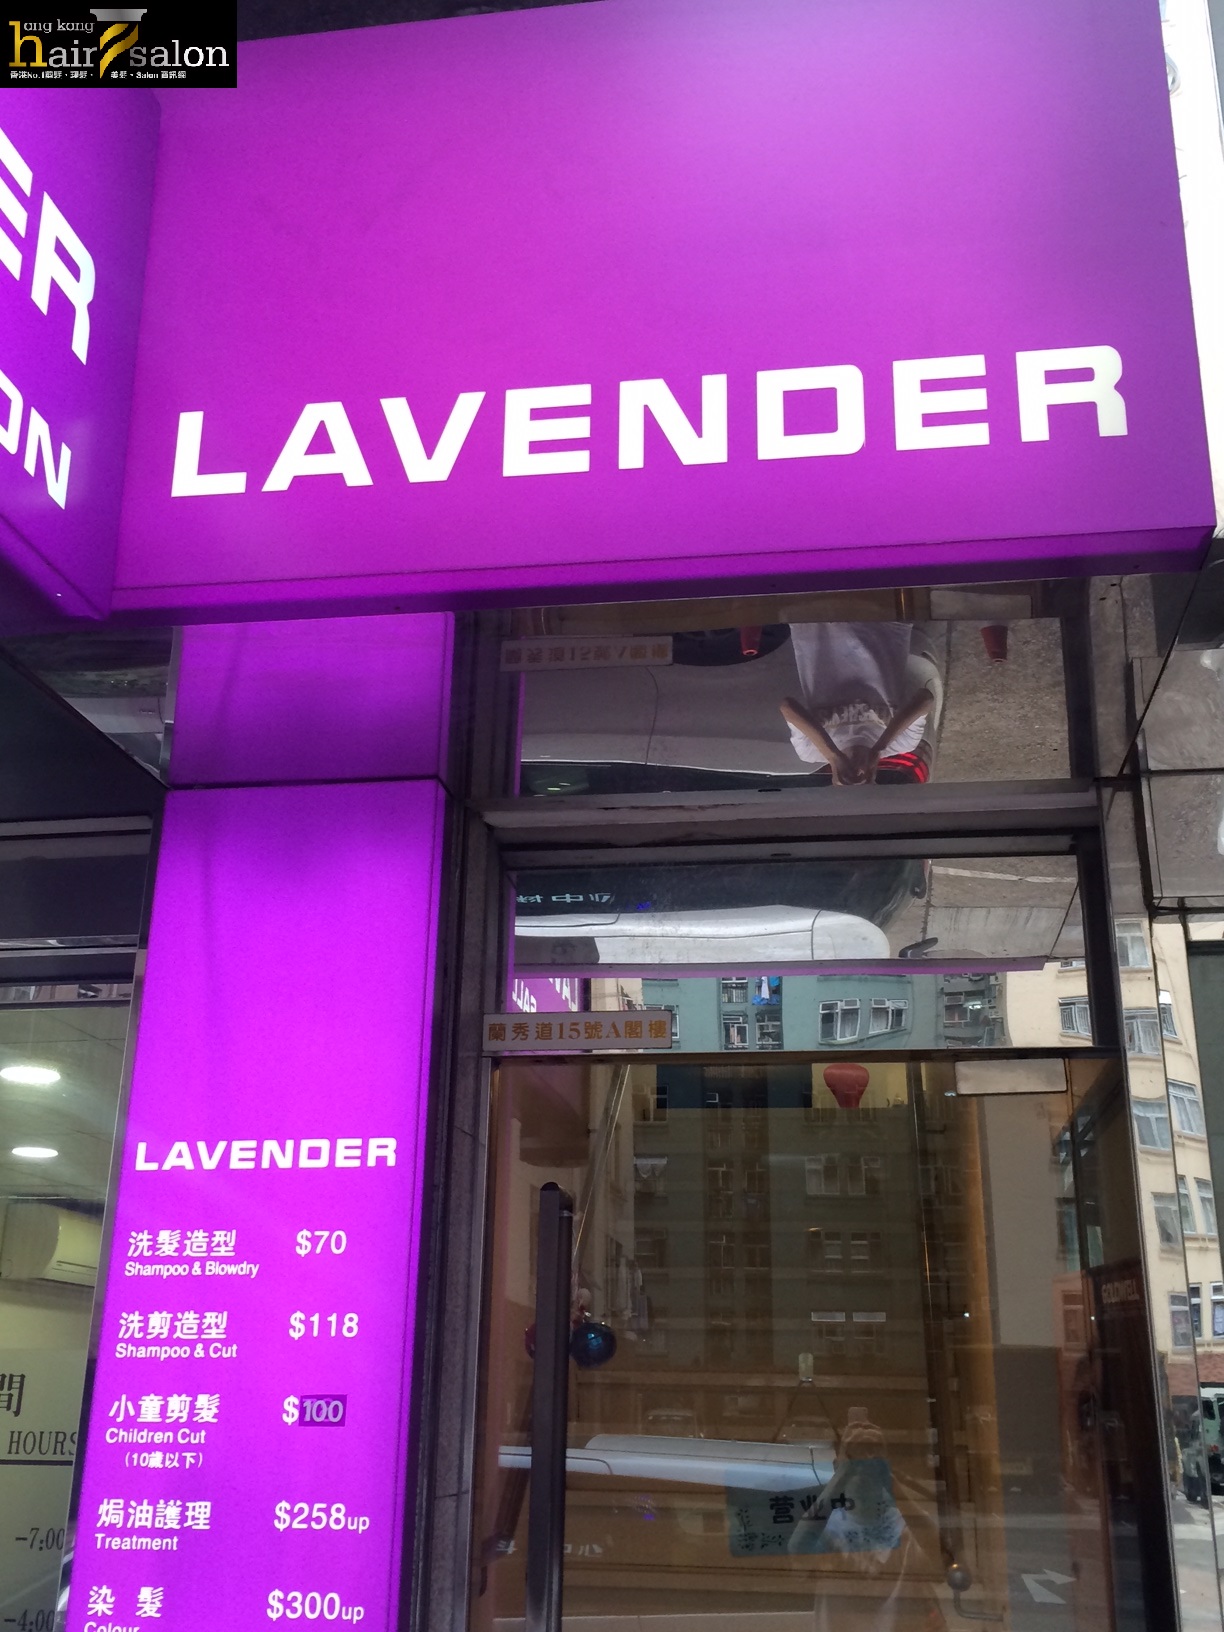 髮型屋: Lavender Salon